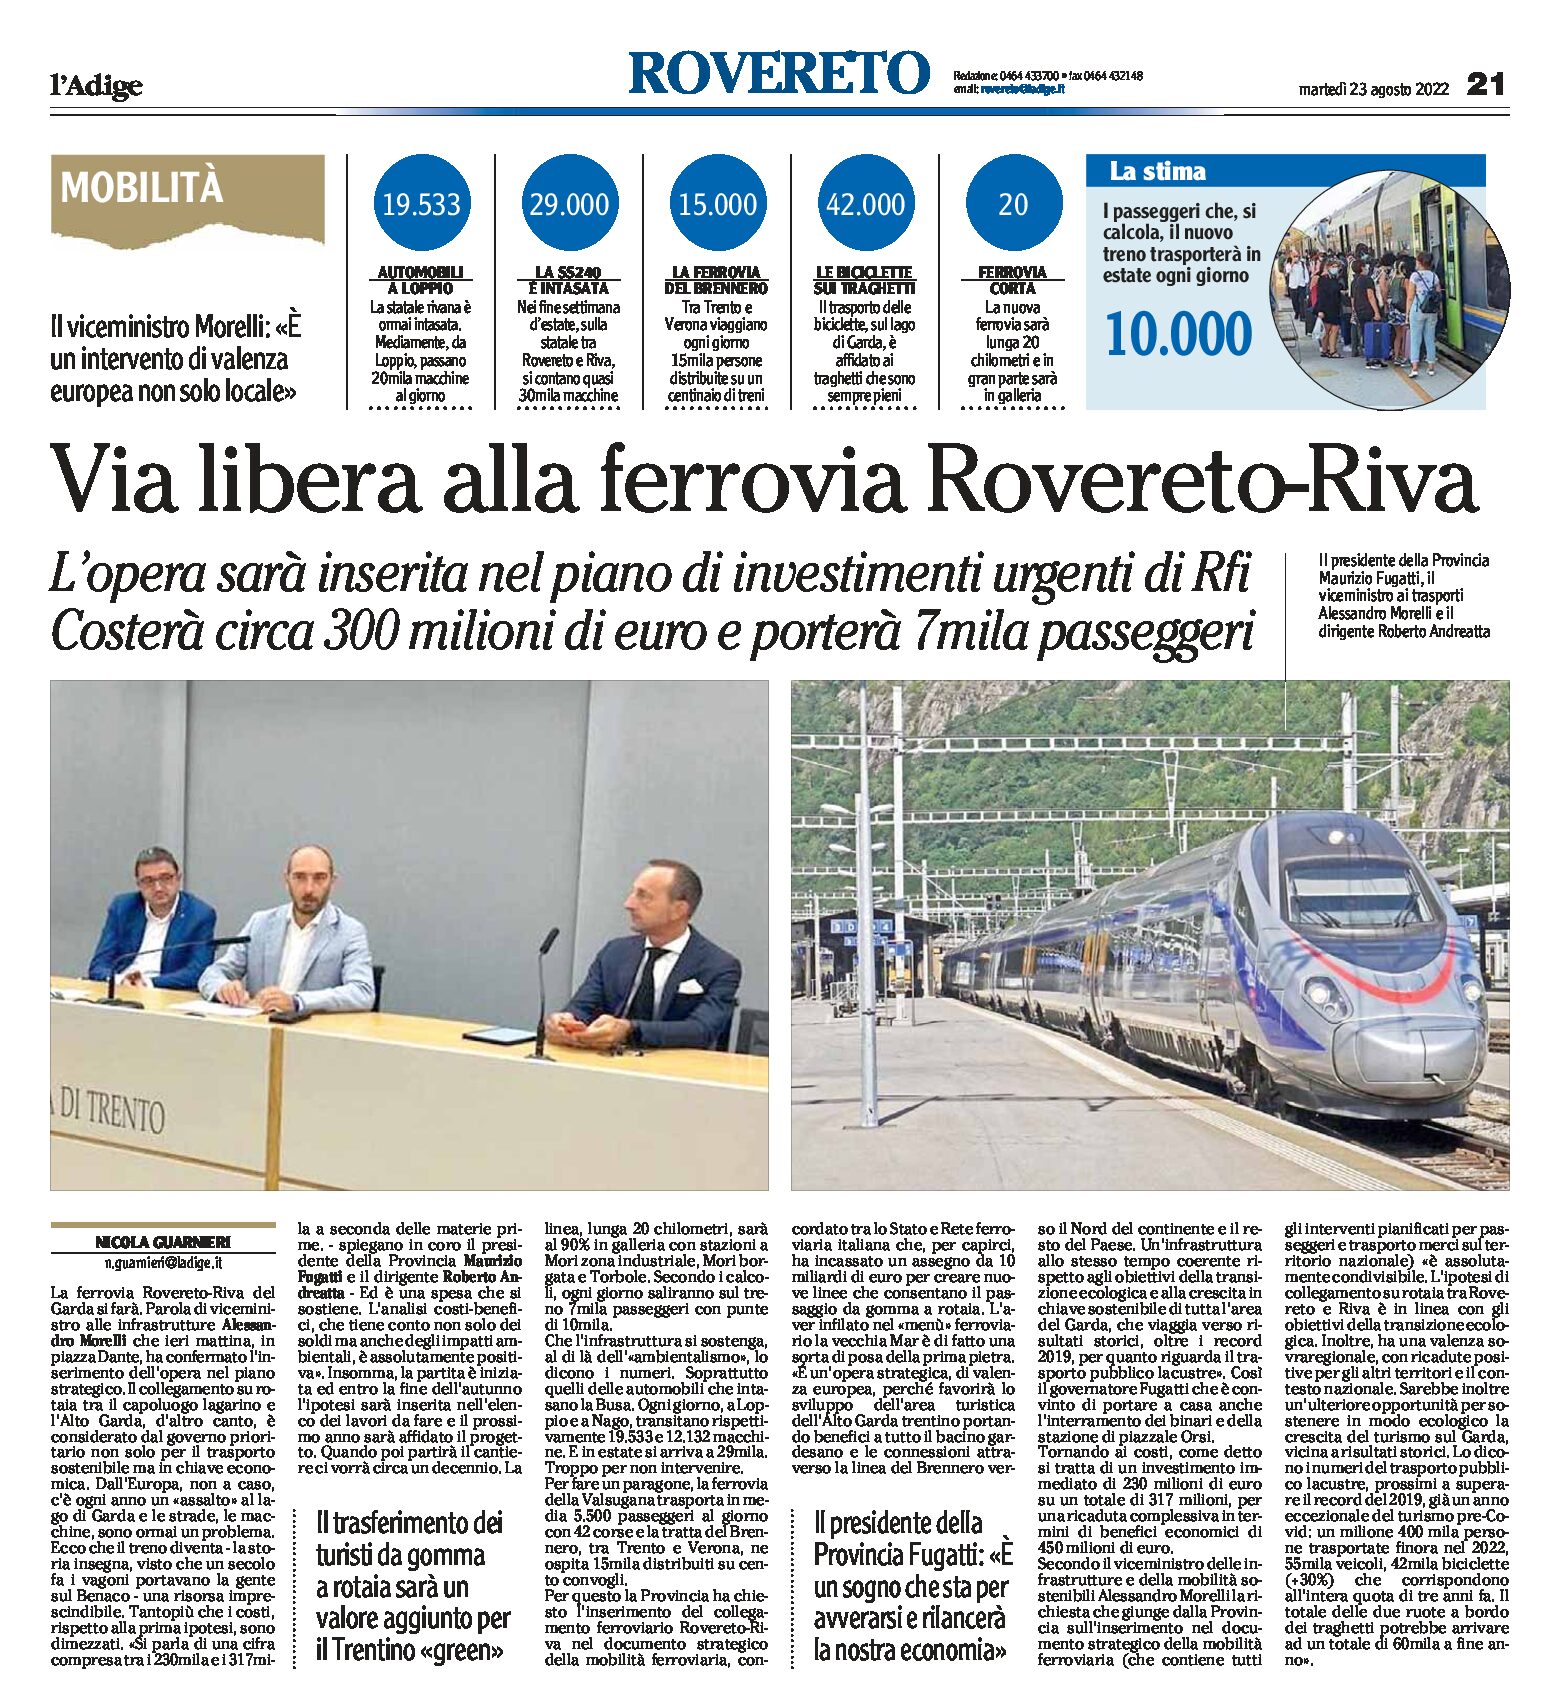 Rovereto-Riva: via libera alla nuova ferrovia. Sarà inserita nel piano di investimenti urgenti di Rfi